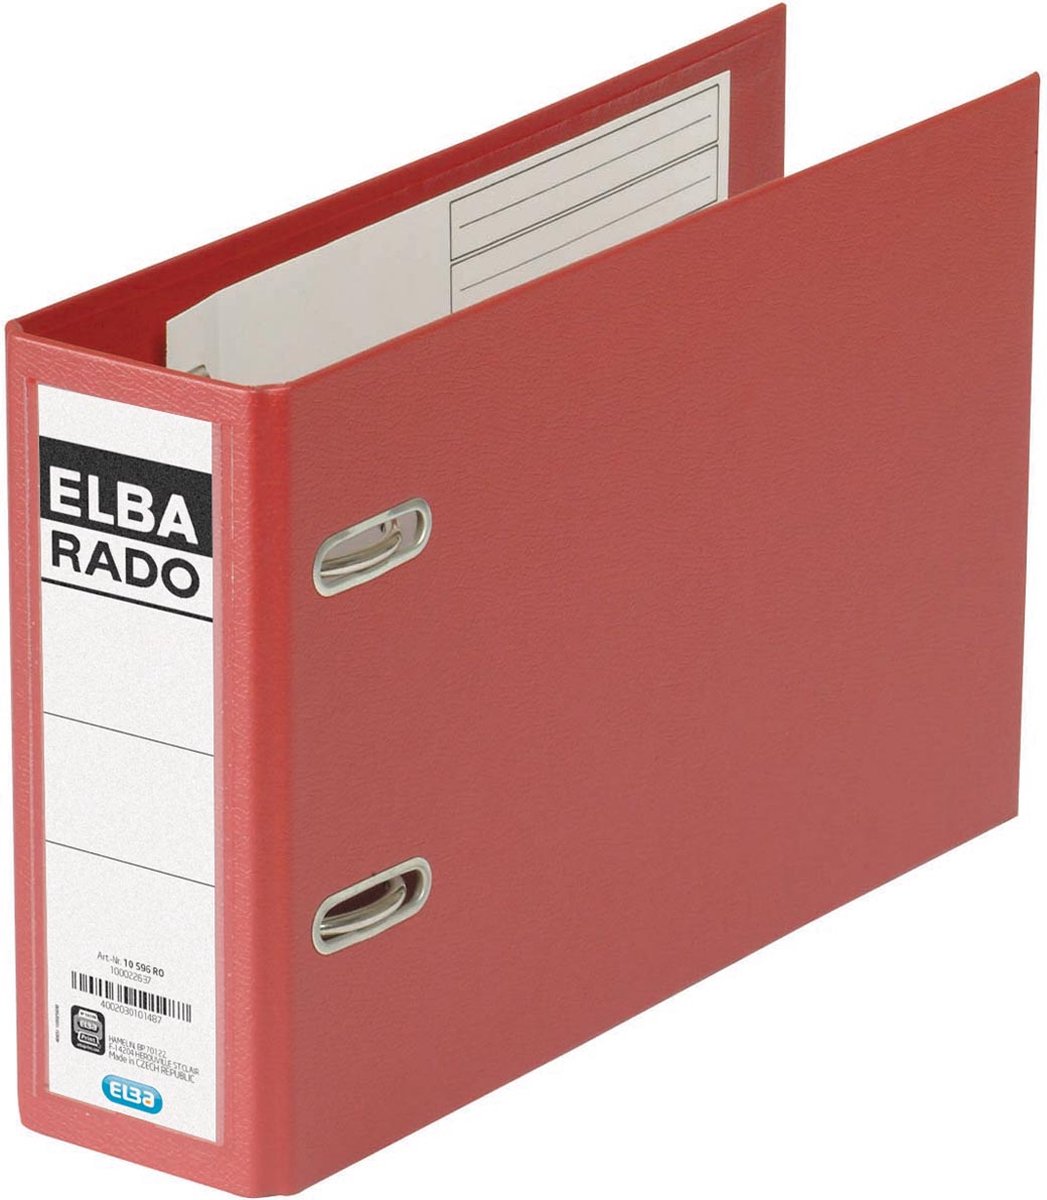 Elba Rado Plast ordner voor ft A5 dwars, donkerrood, rug van 7,5 cm - Elba